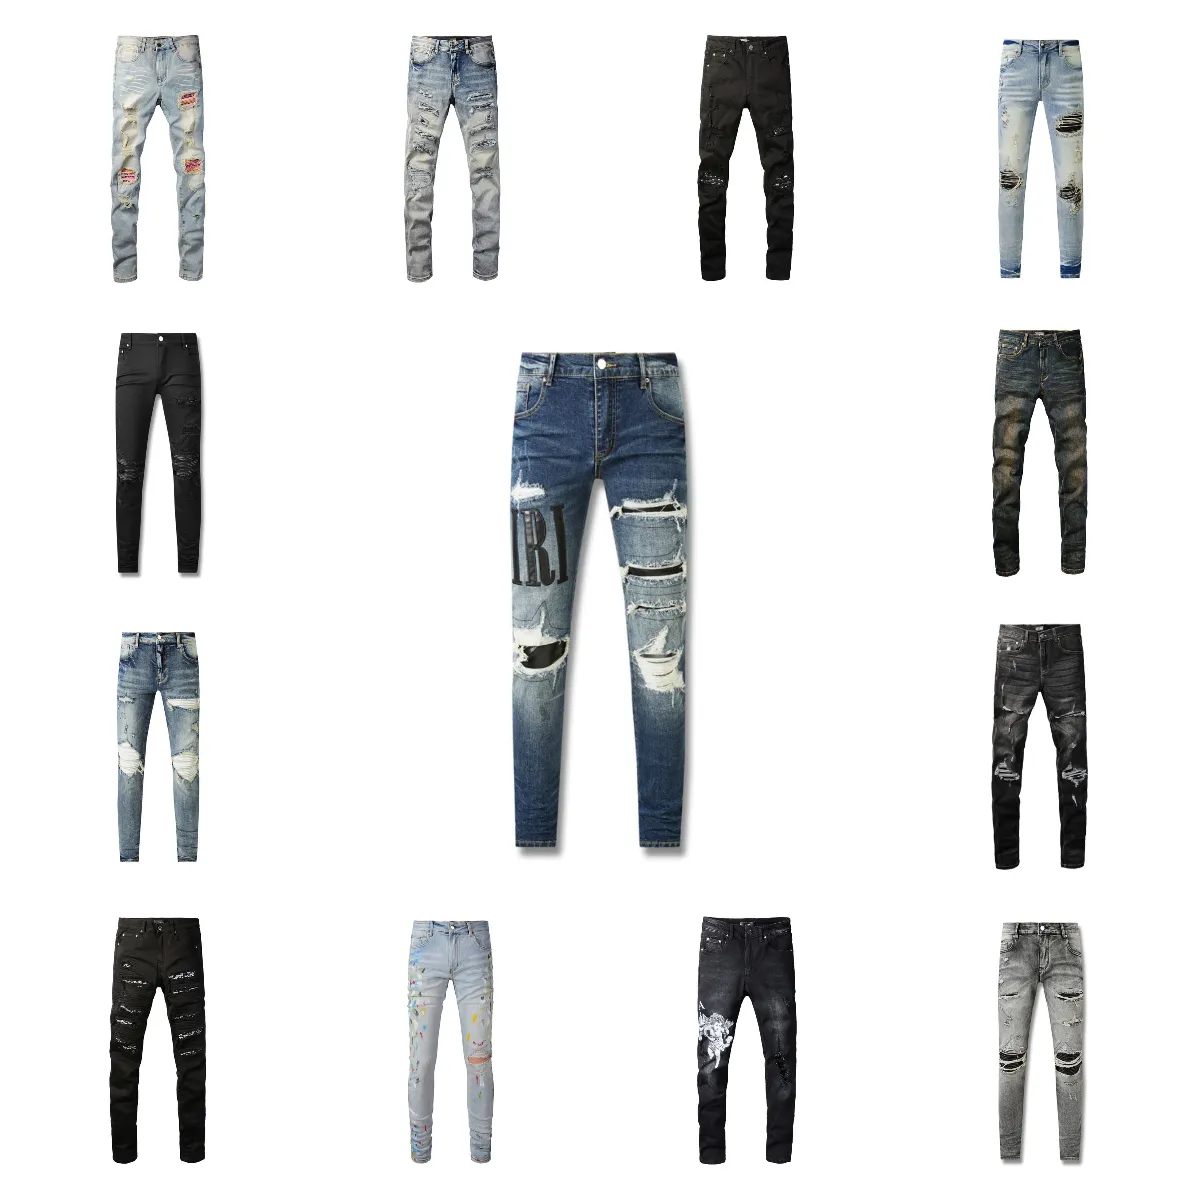 Jeans tasarımcı erkek kot poral kot pantolon yüksek sokak deliği yıldız yama erkekler kadın yıldız nakış paneli pantolonlar streç slim fit pantolon pantolon amirirs yırtık kot pantolon